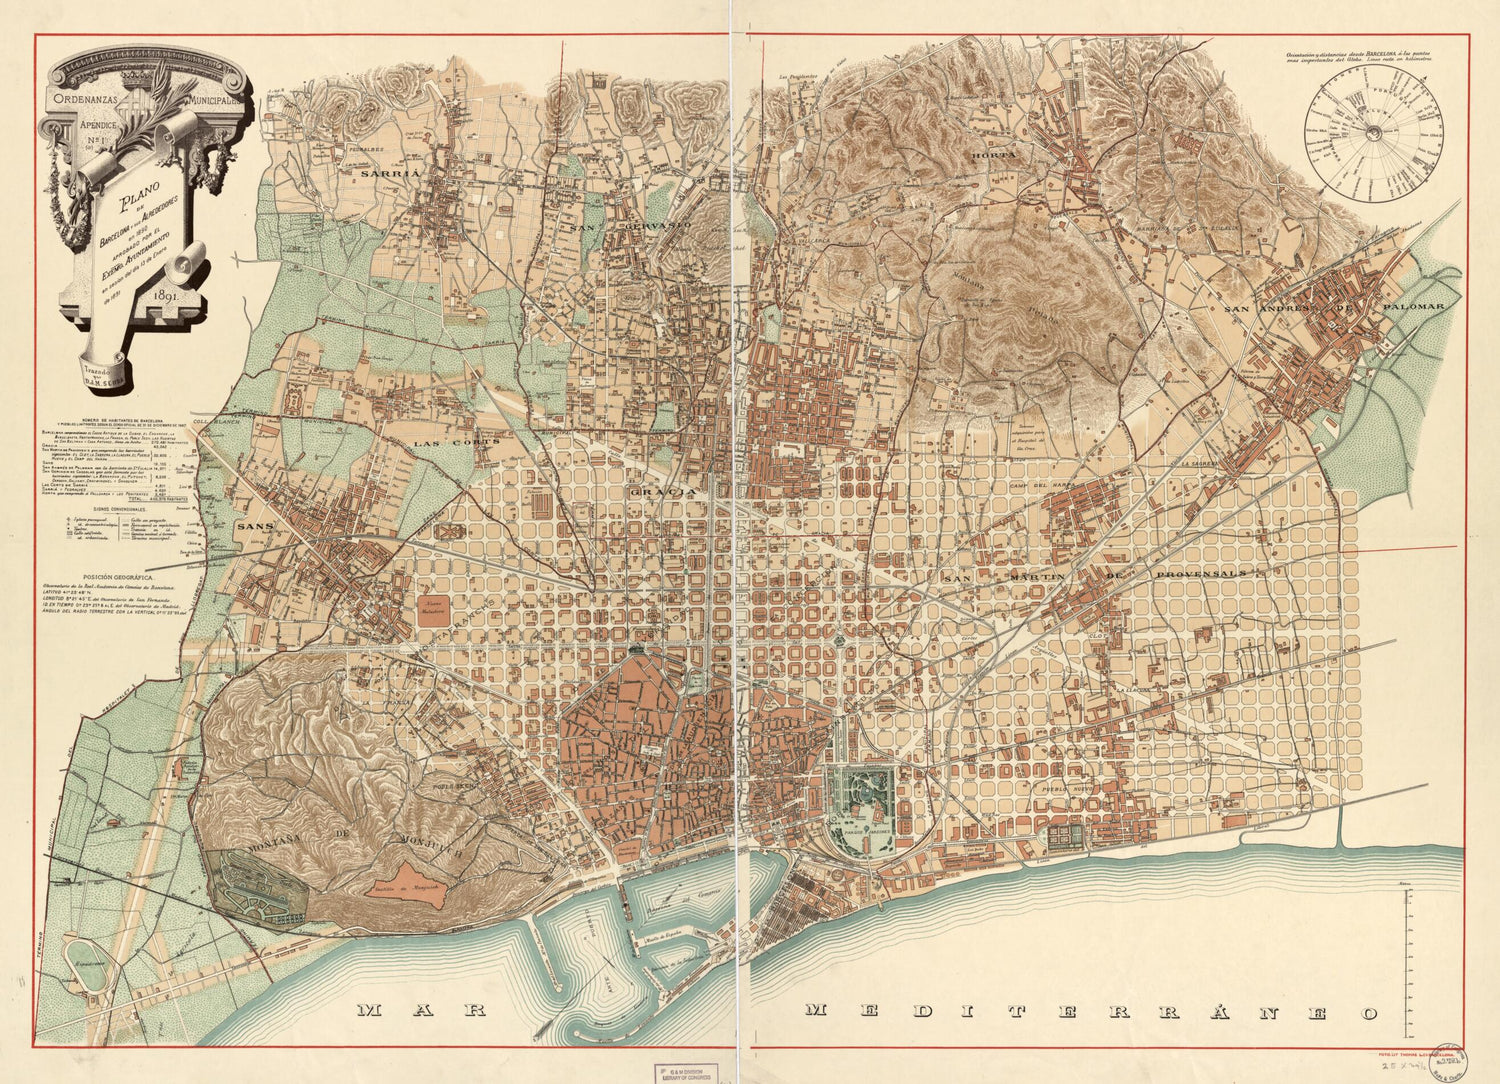 This old map of Plano De Barcelona Y Sus Alrededores En 1890 : Aprobado Por El Exemo. Ayuntamiento En Session Del Dia 13 De Enero De from 1891 was created by D. J. M. Serra in 1891